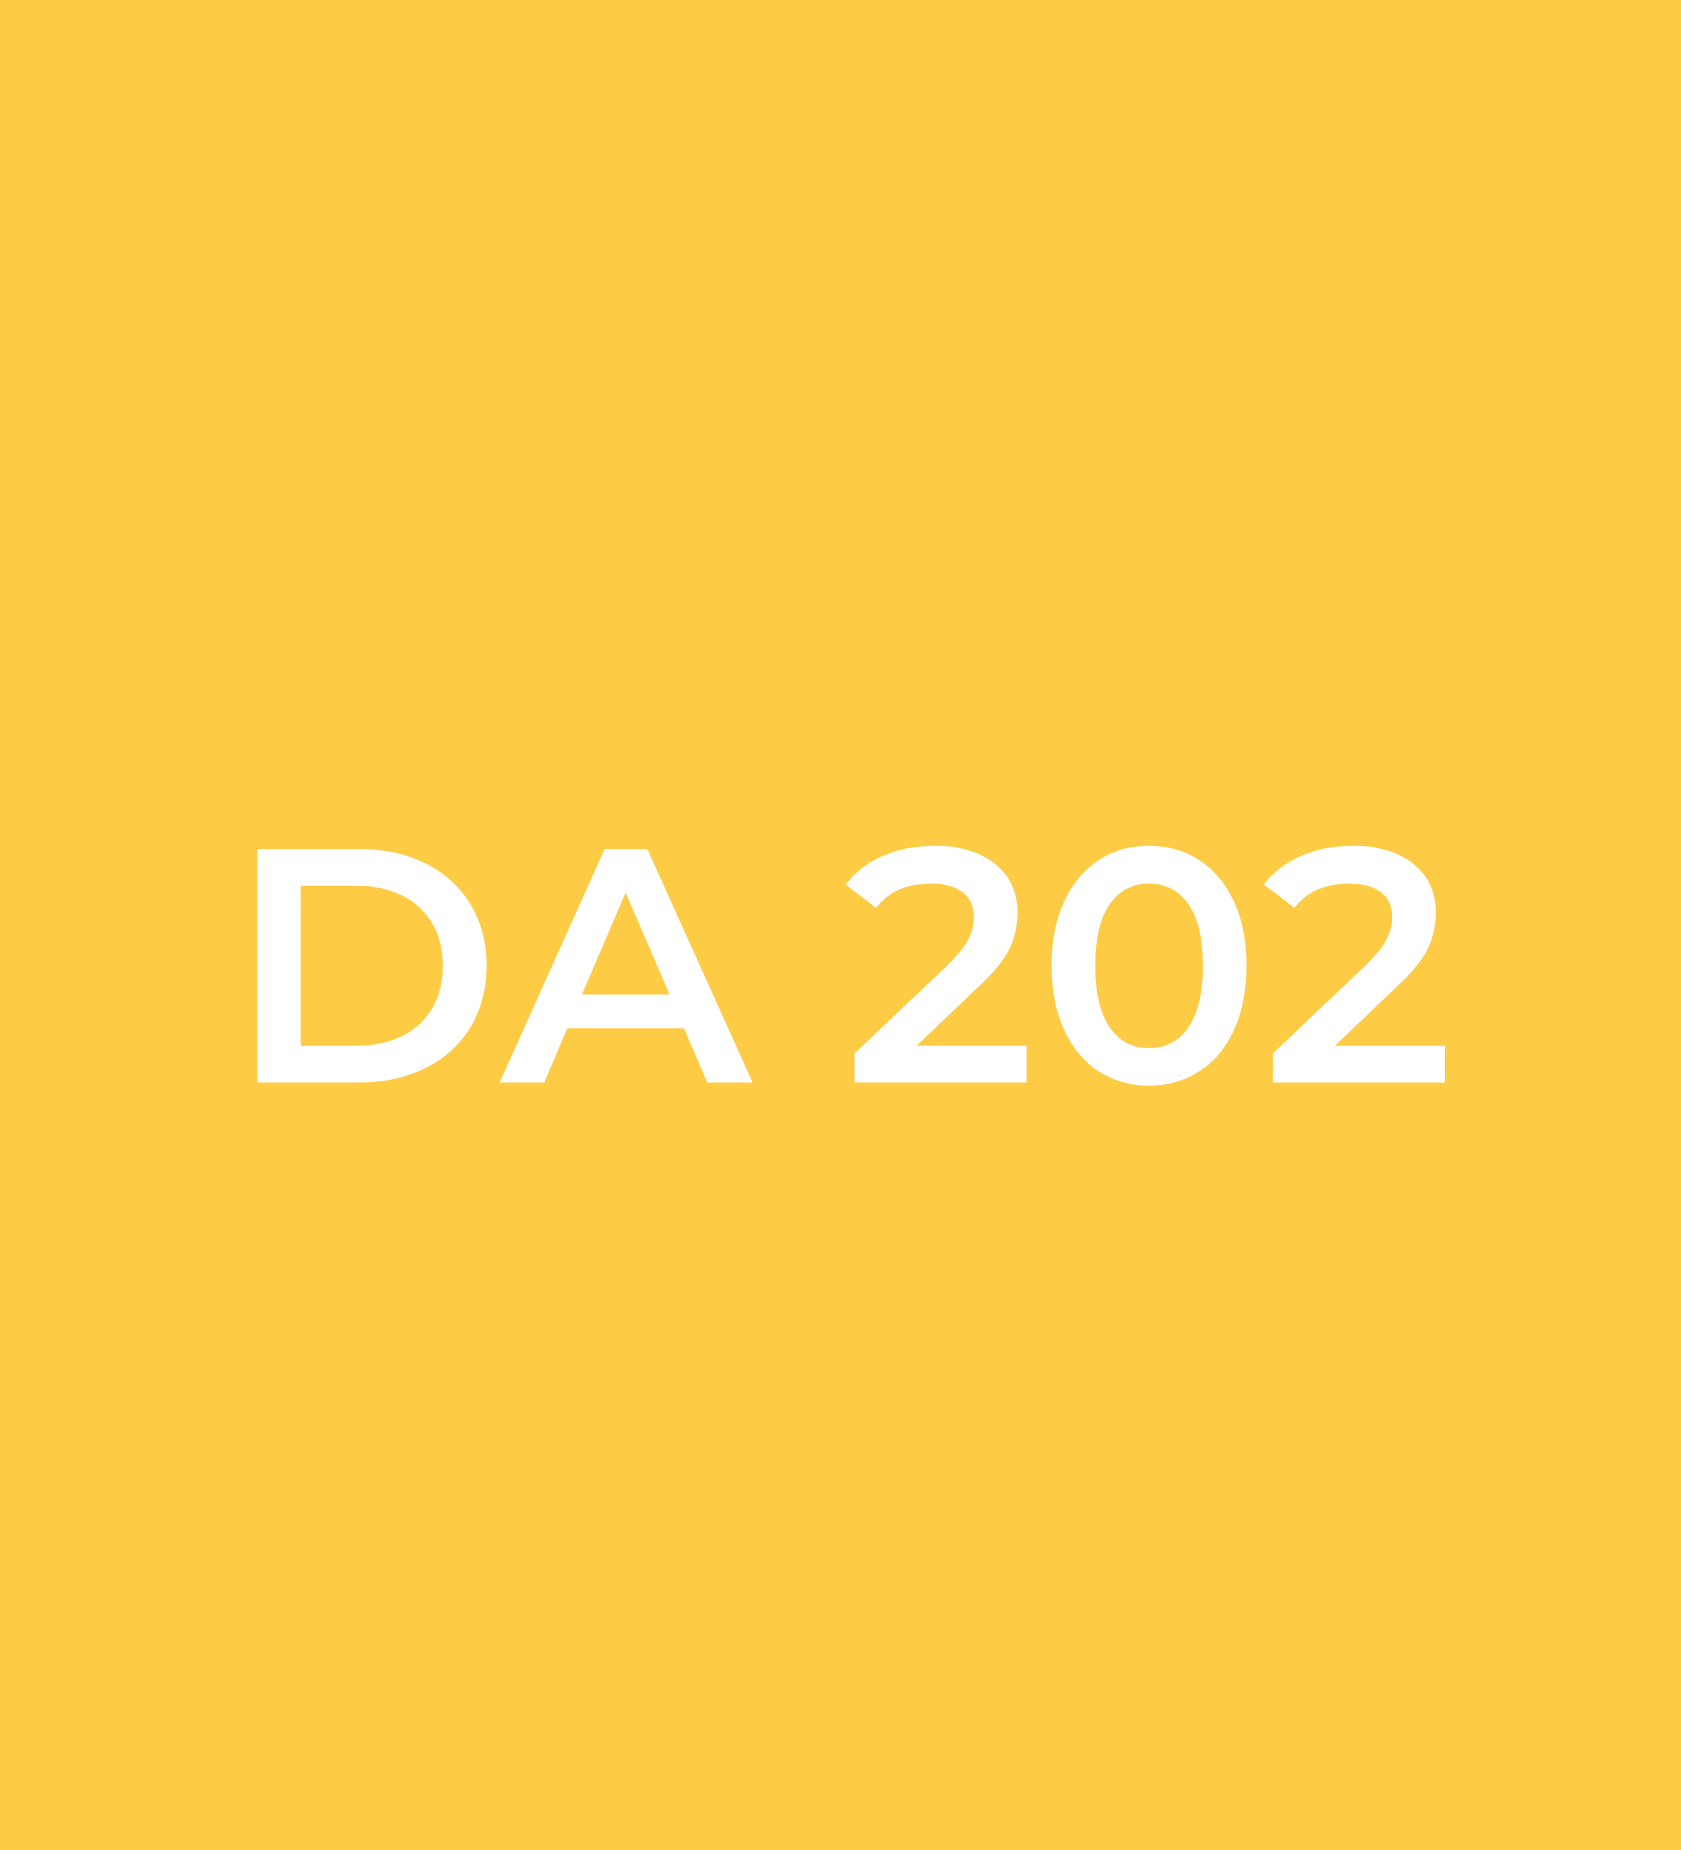 DA 202 